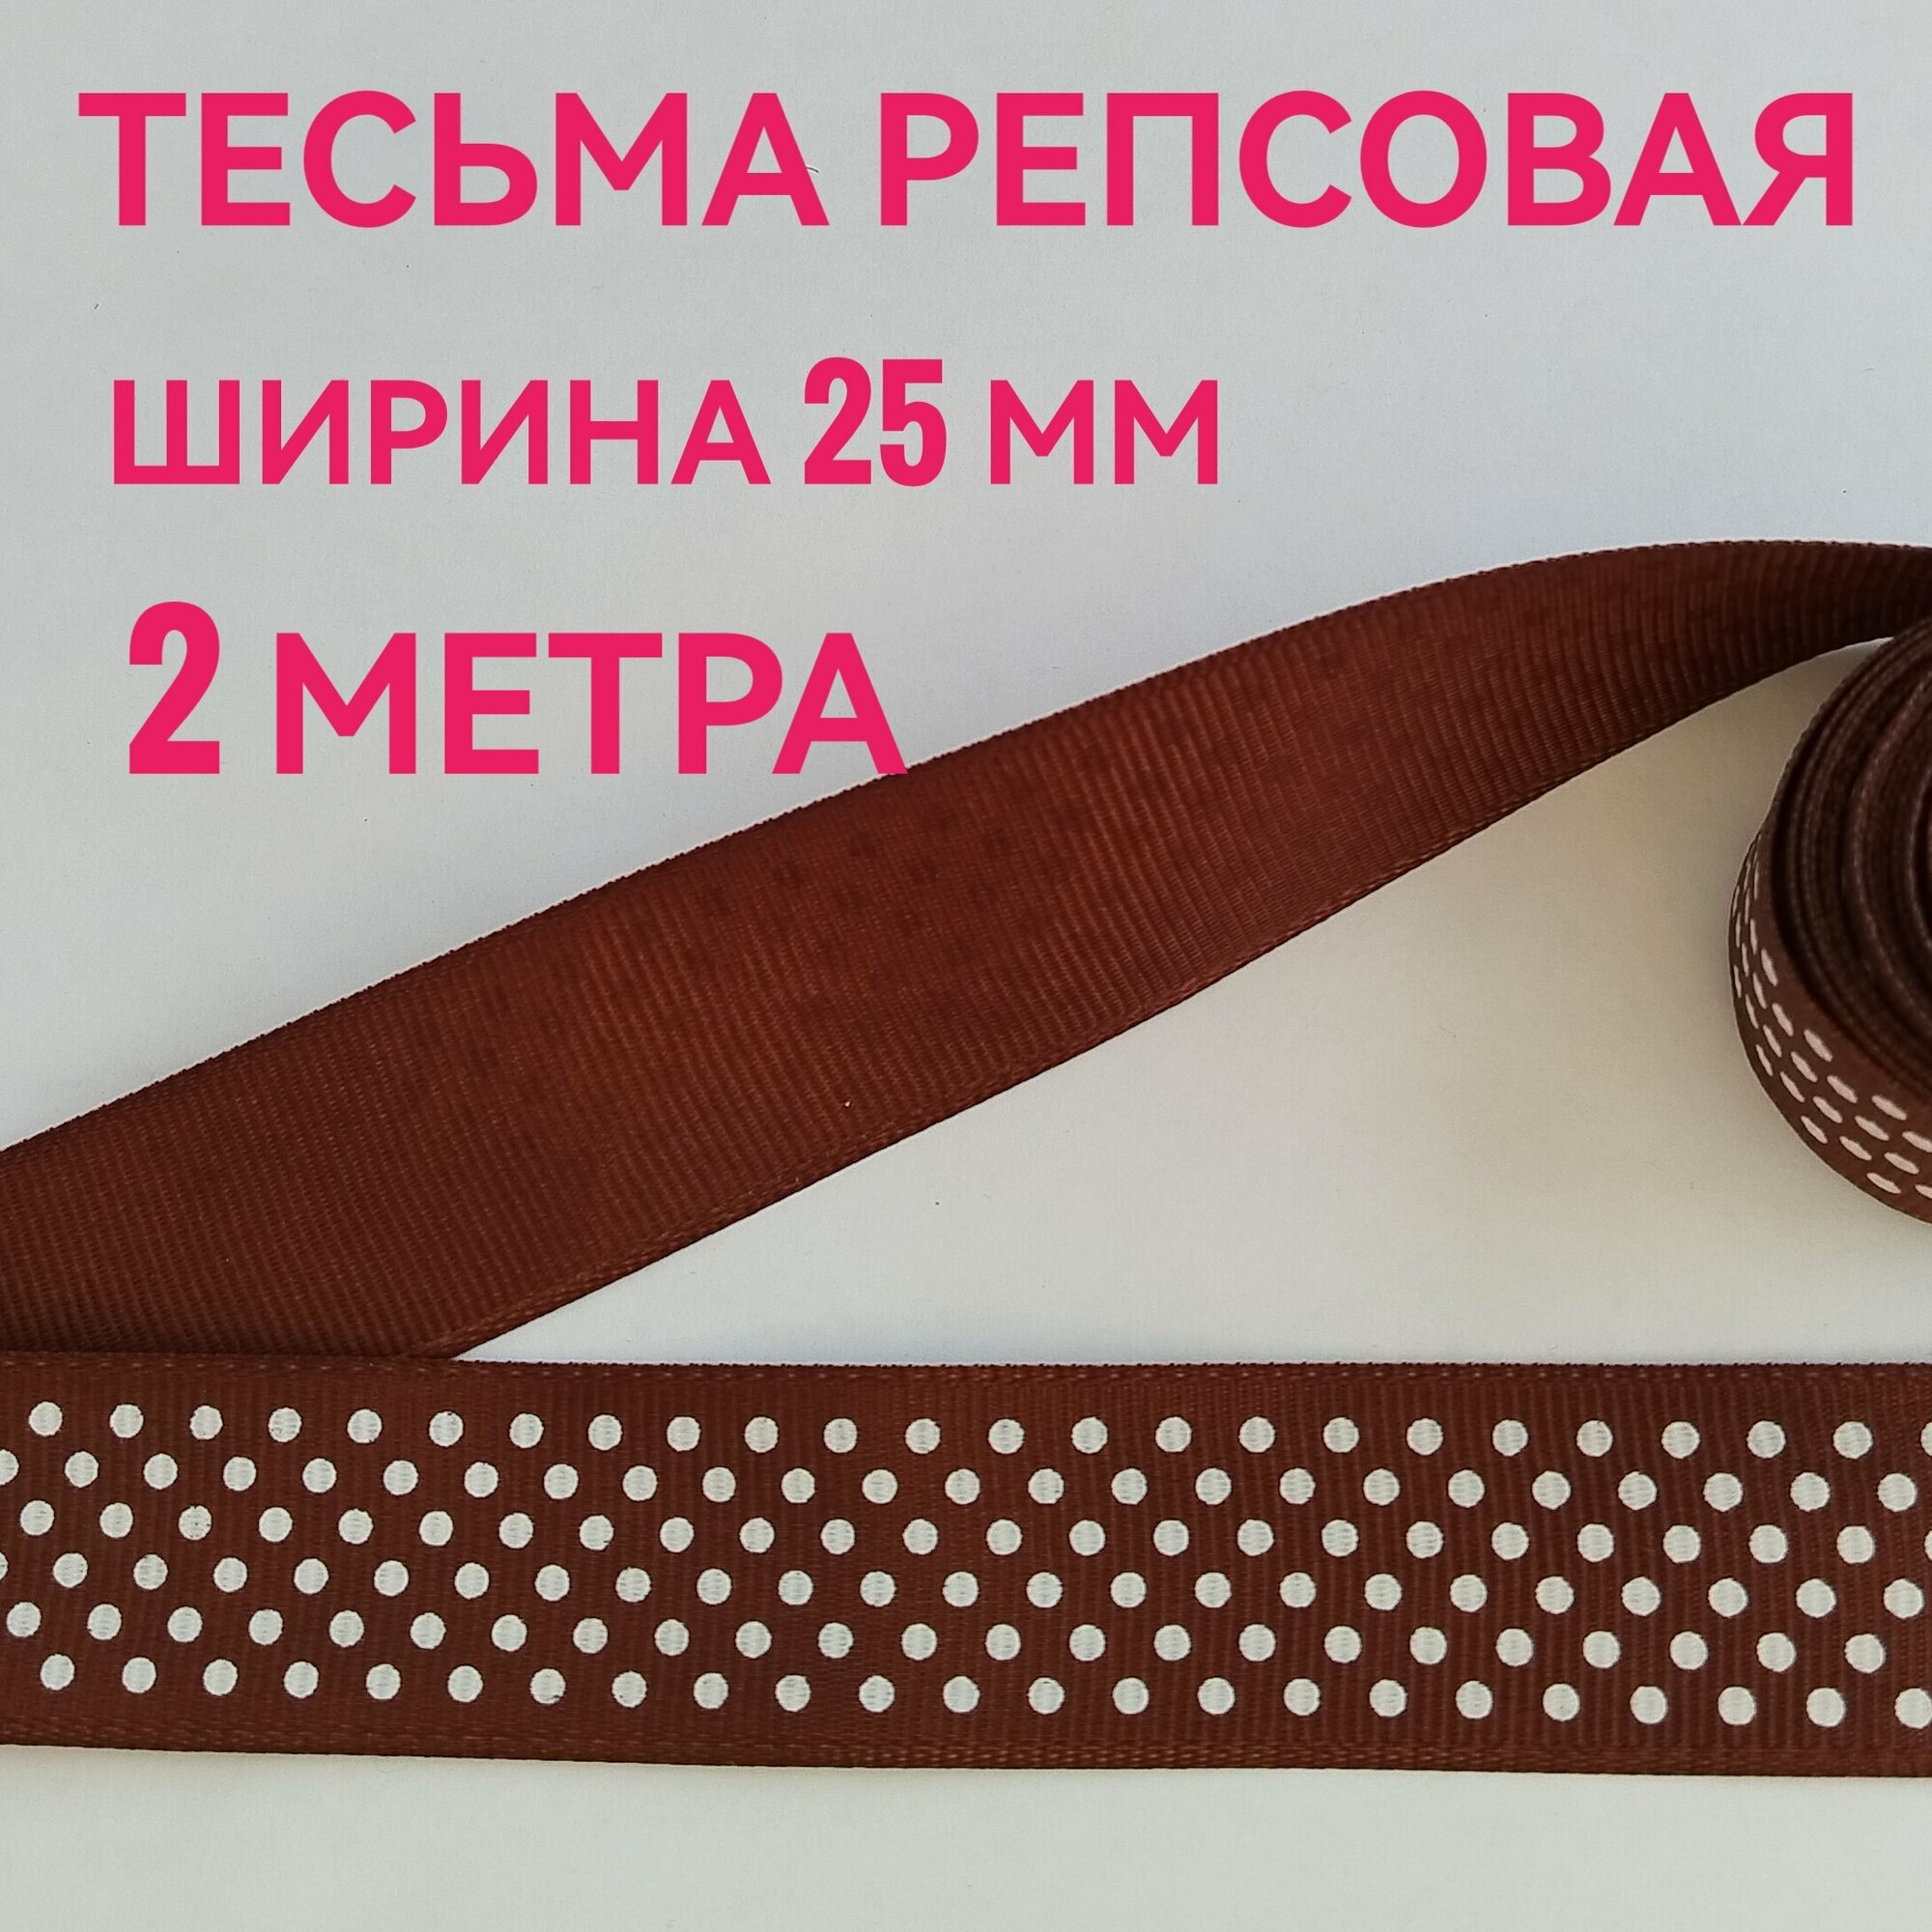 Лента/ тесьма репсовая для шитья коричневая в белый горох ш.25 мм, в уп.2 м, для шитья, творчества, рукоделия.